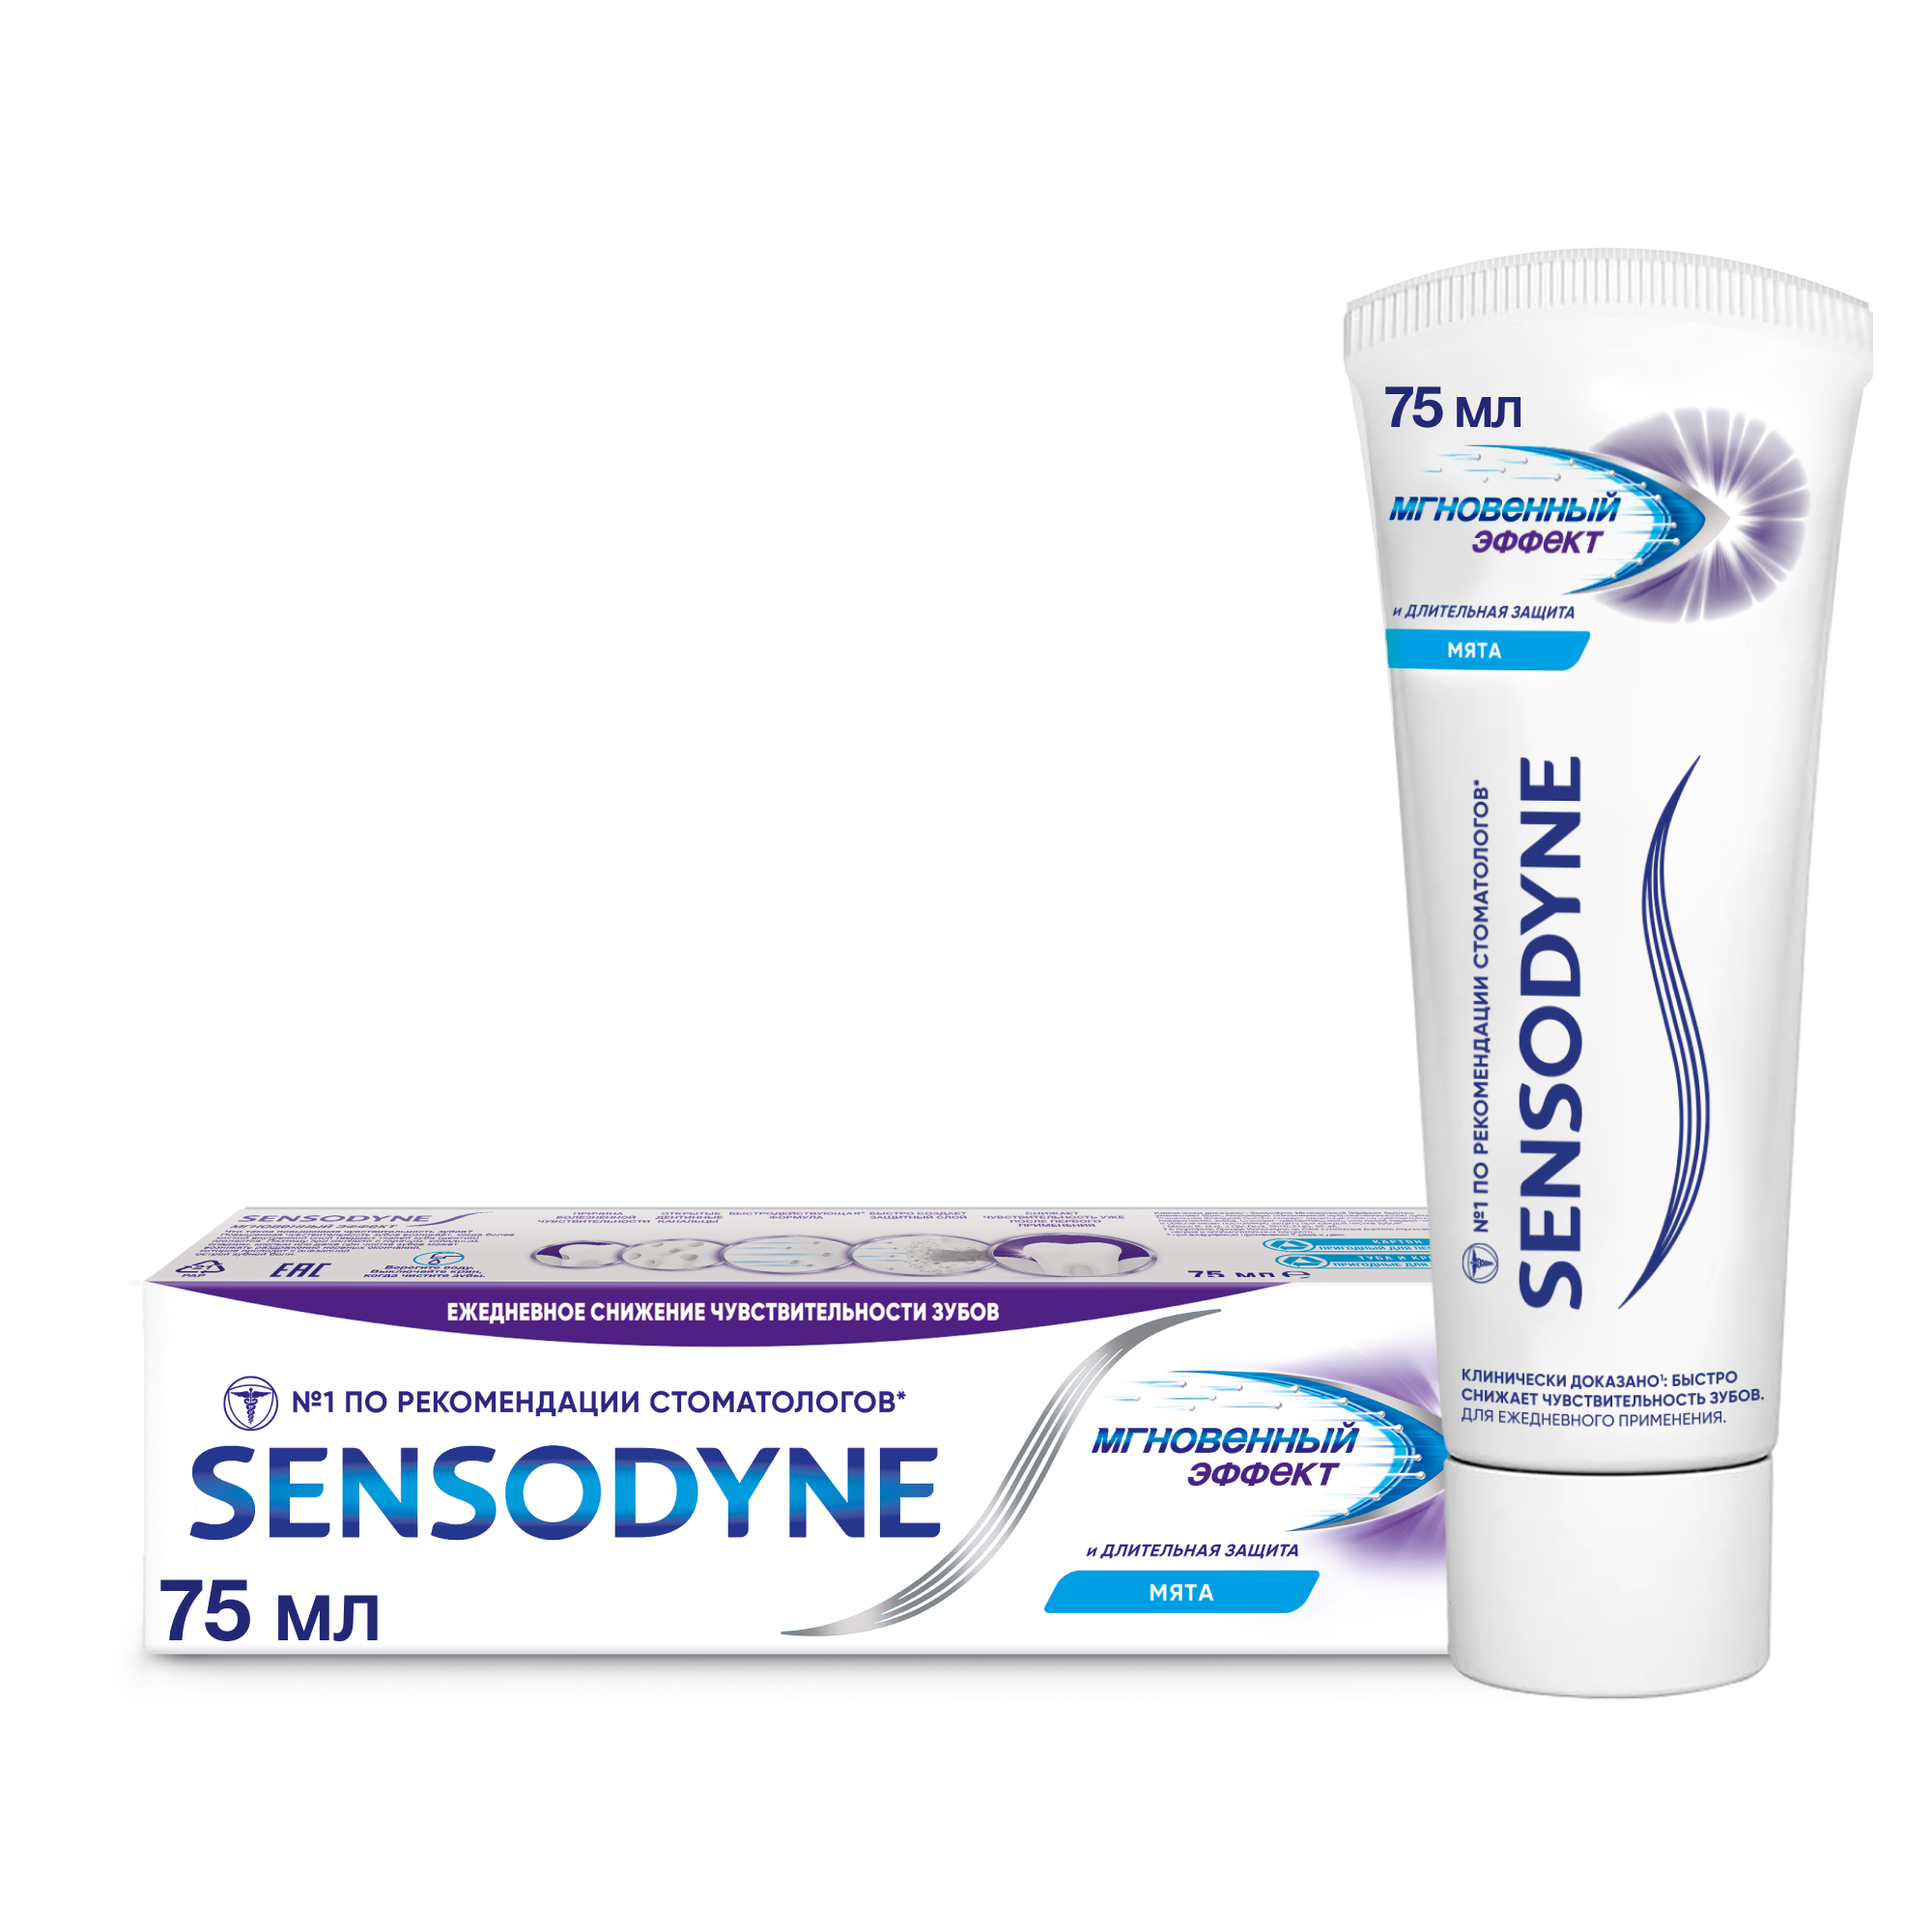 Зубная паста Sensodyne Мгновенный Эффект для чувствительных зубов с фтором, 75 мл зубная паста sensodyne экстра отбеливание для чувствительных зубов 75 мл